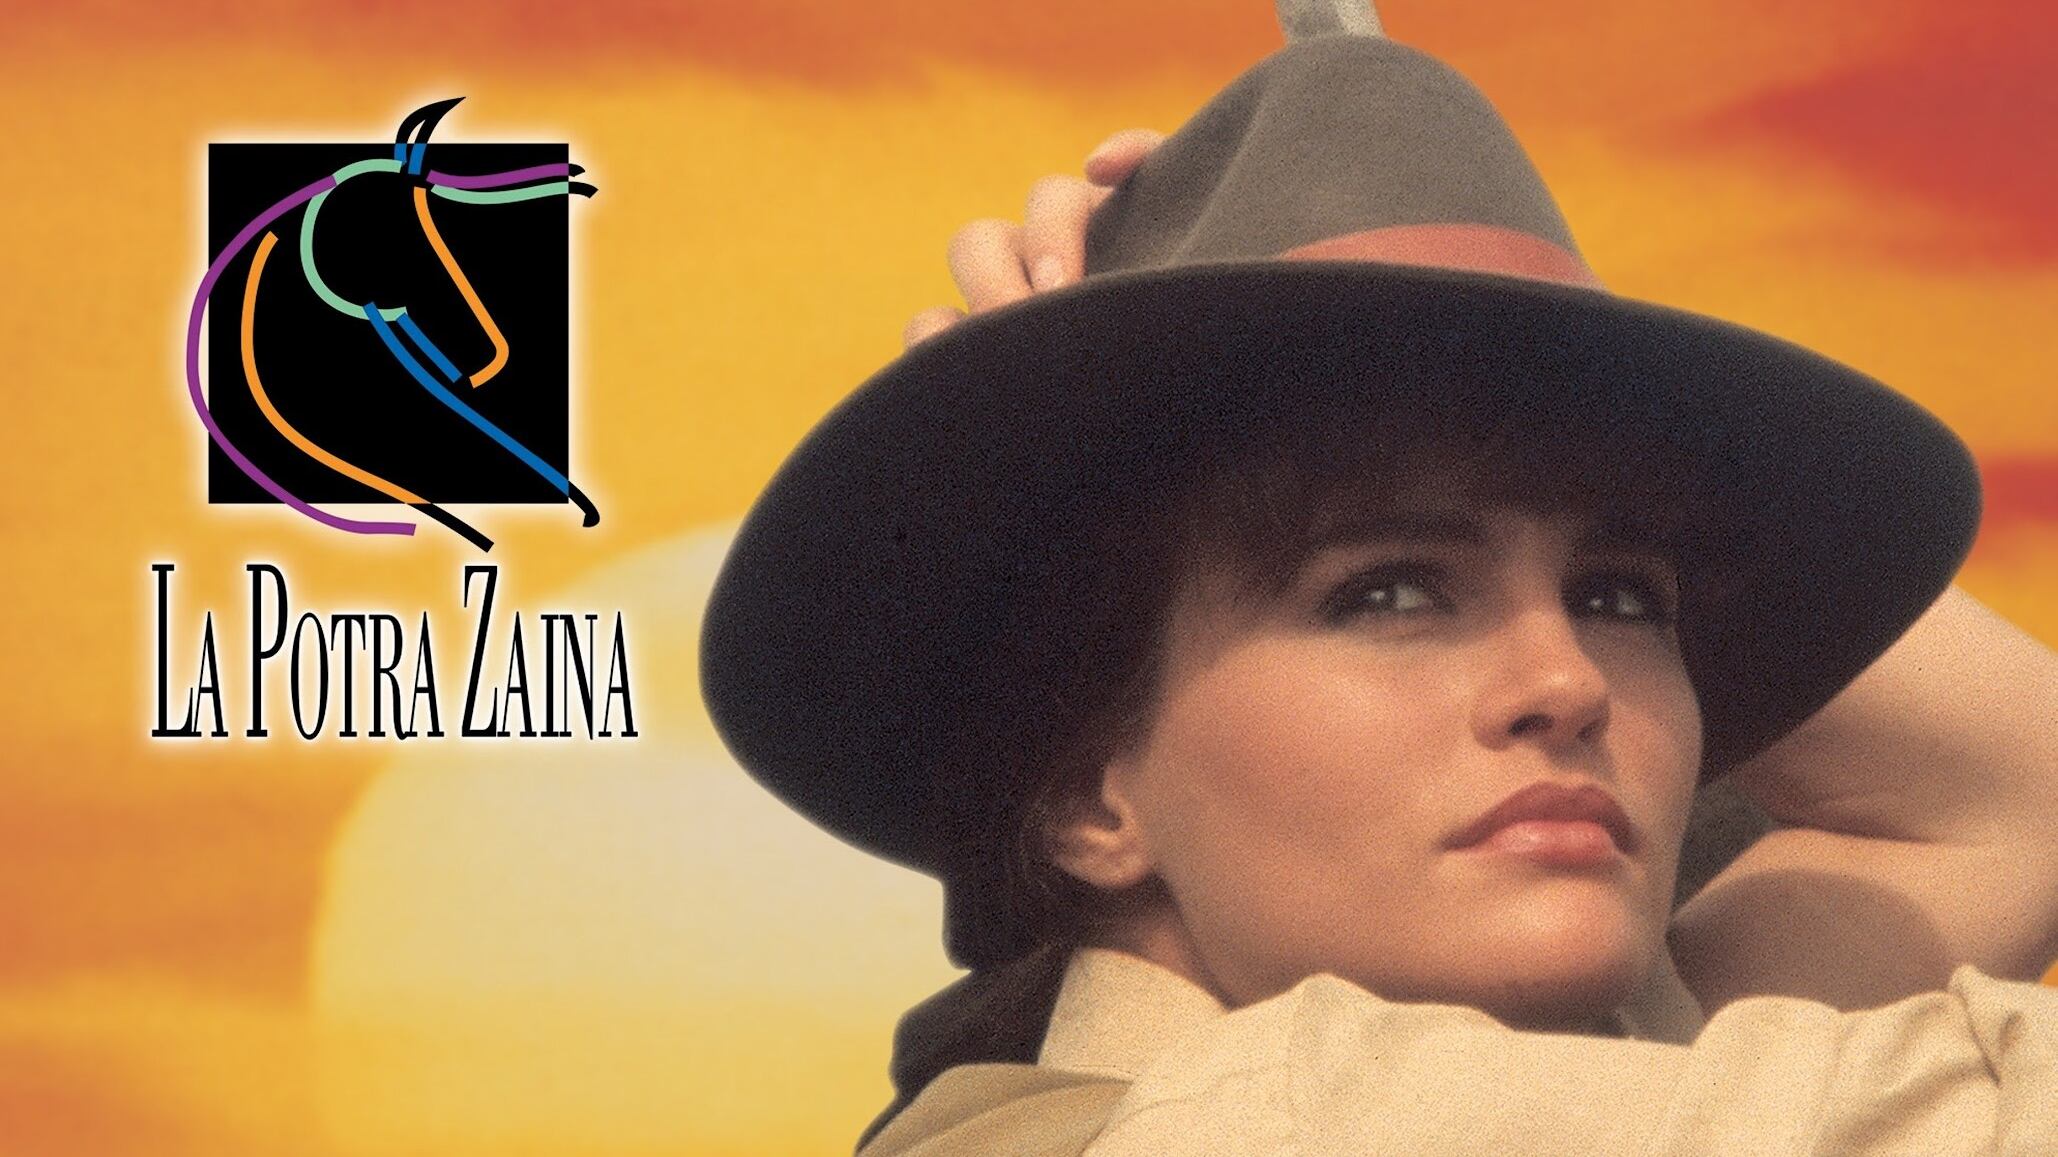 Aura Cristina Geithner ha presentado una nueva versión del tema de La Potra Zaina retomando así su papel en ese éxito dramático.